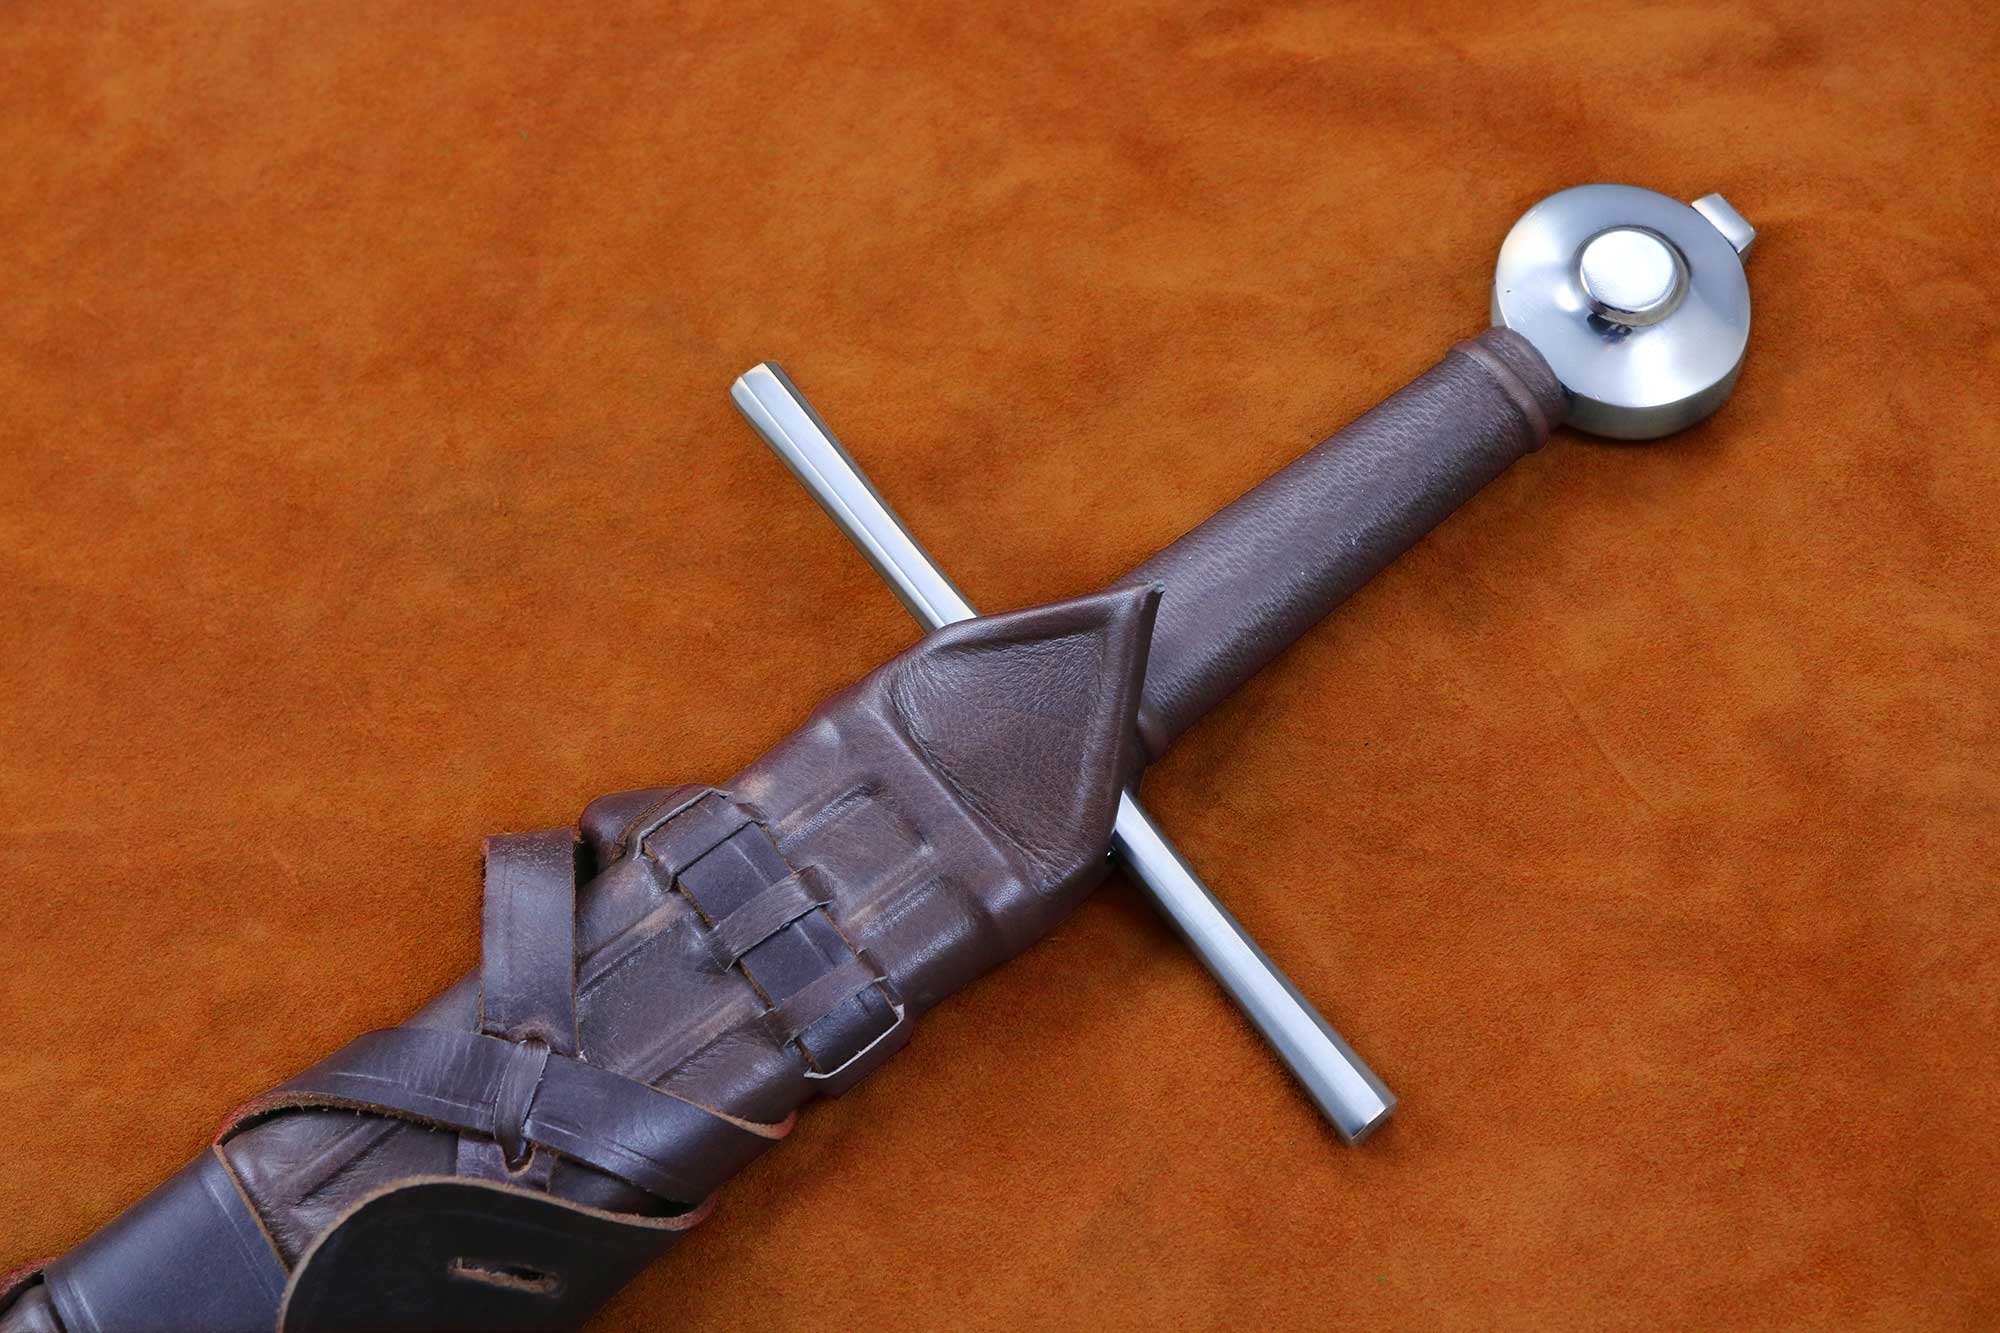 The Duke Sword